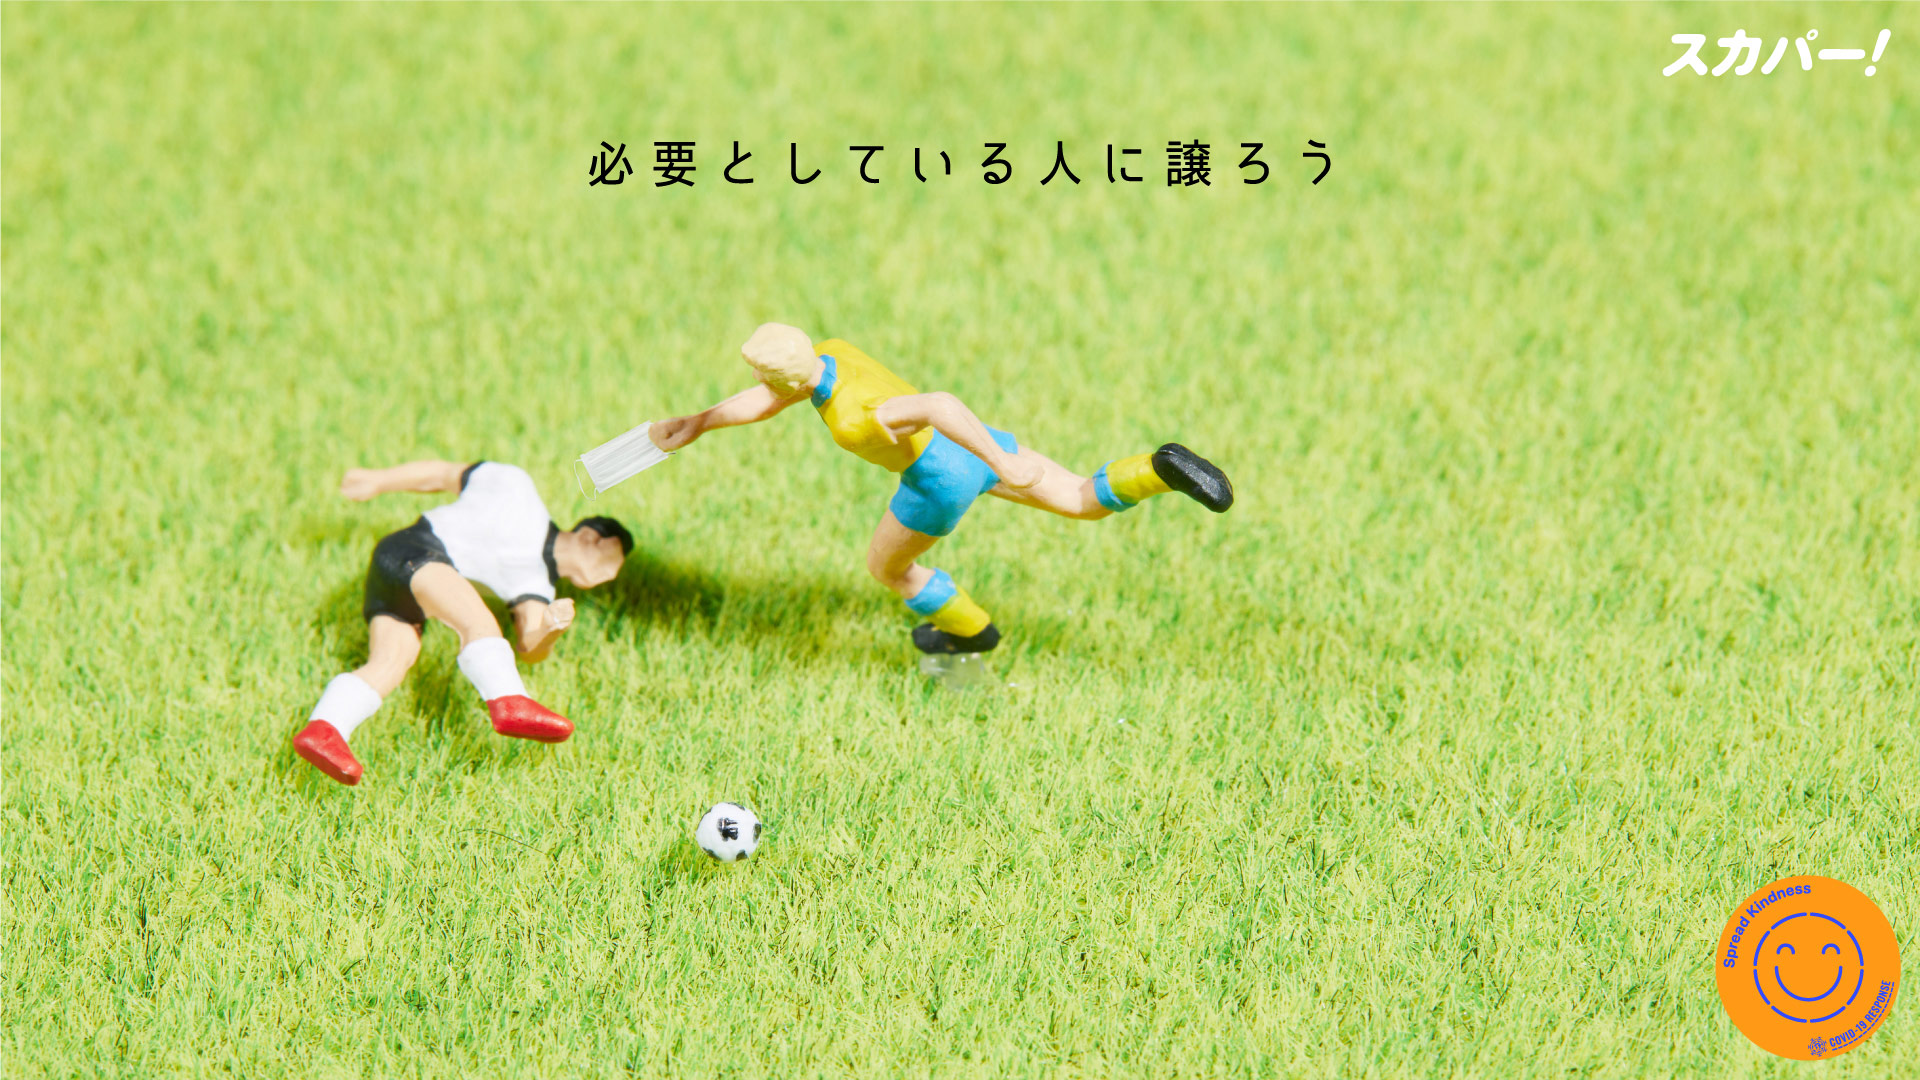 優しさの伝播 日本語 スカパー サッカーオリジナル壁紙